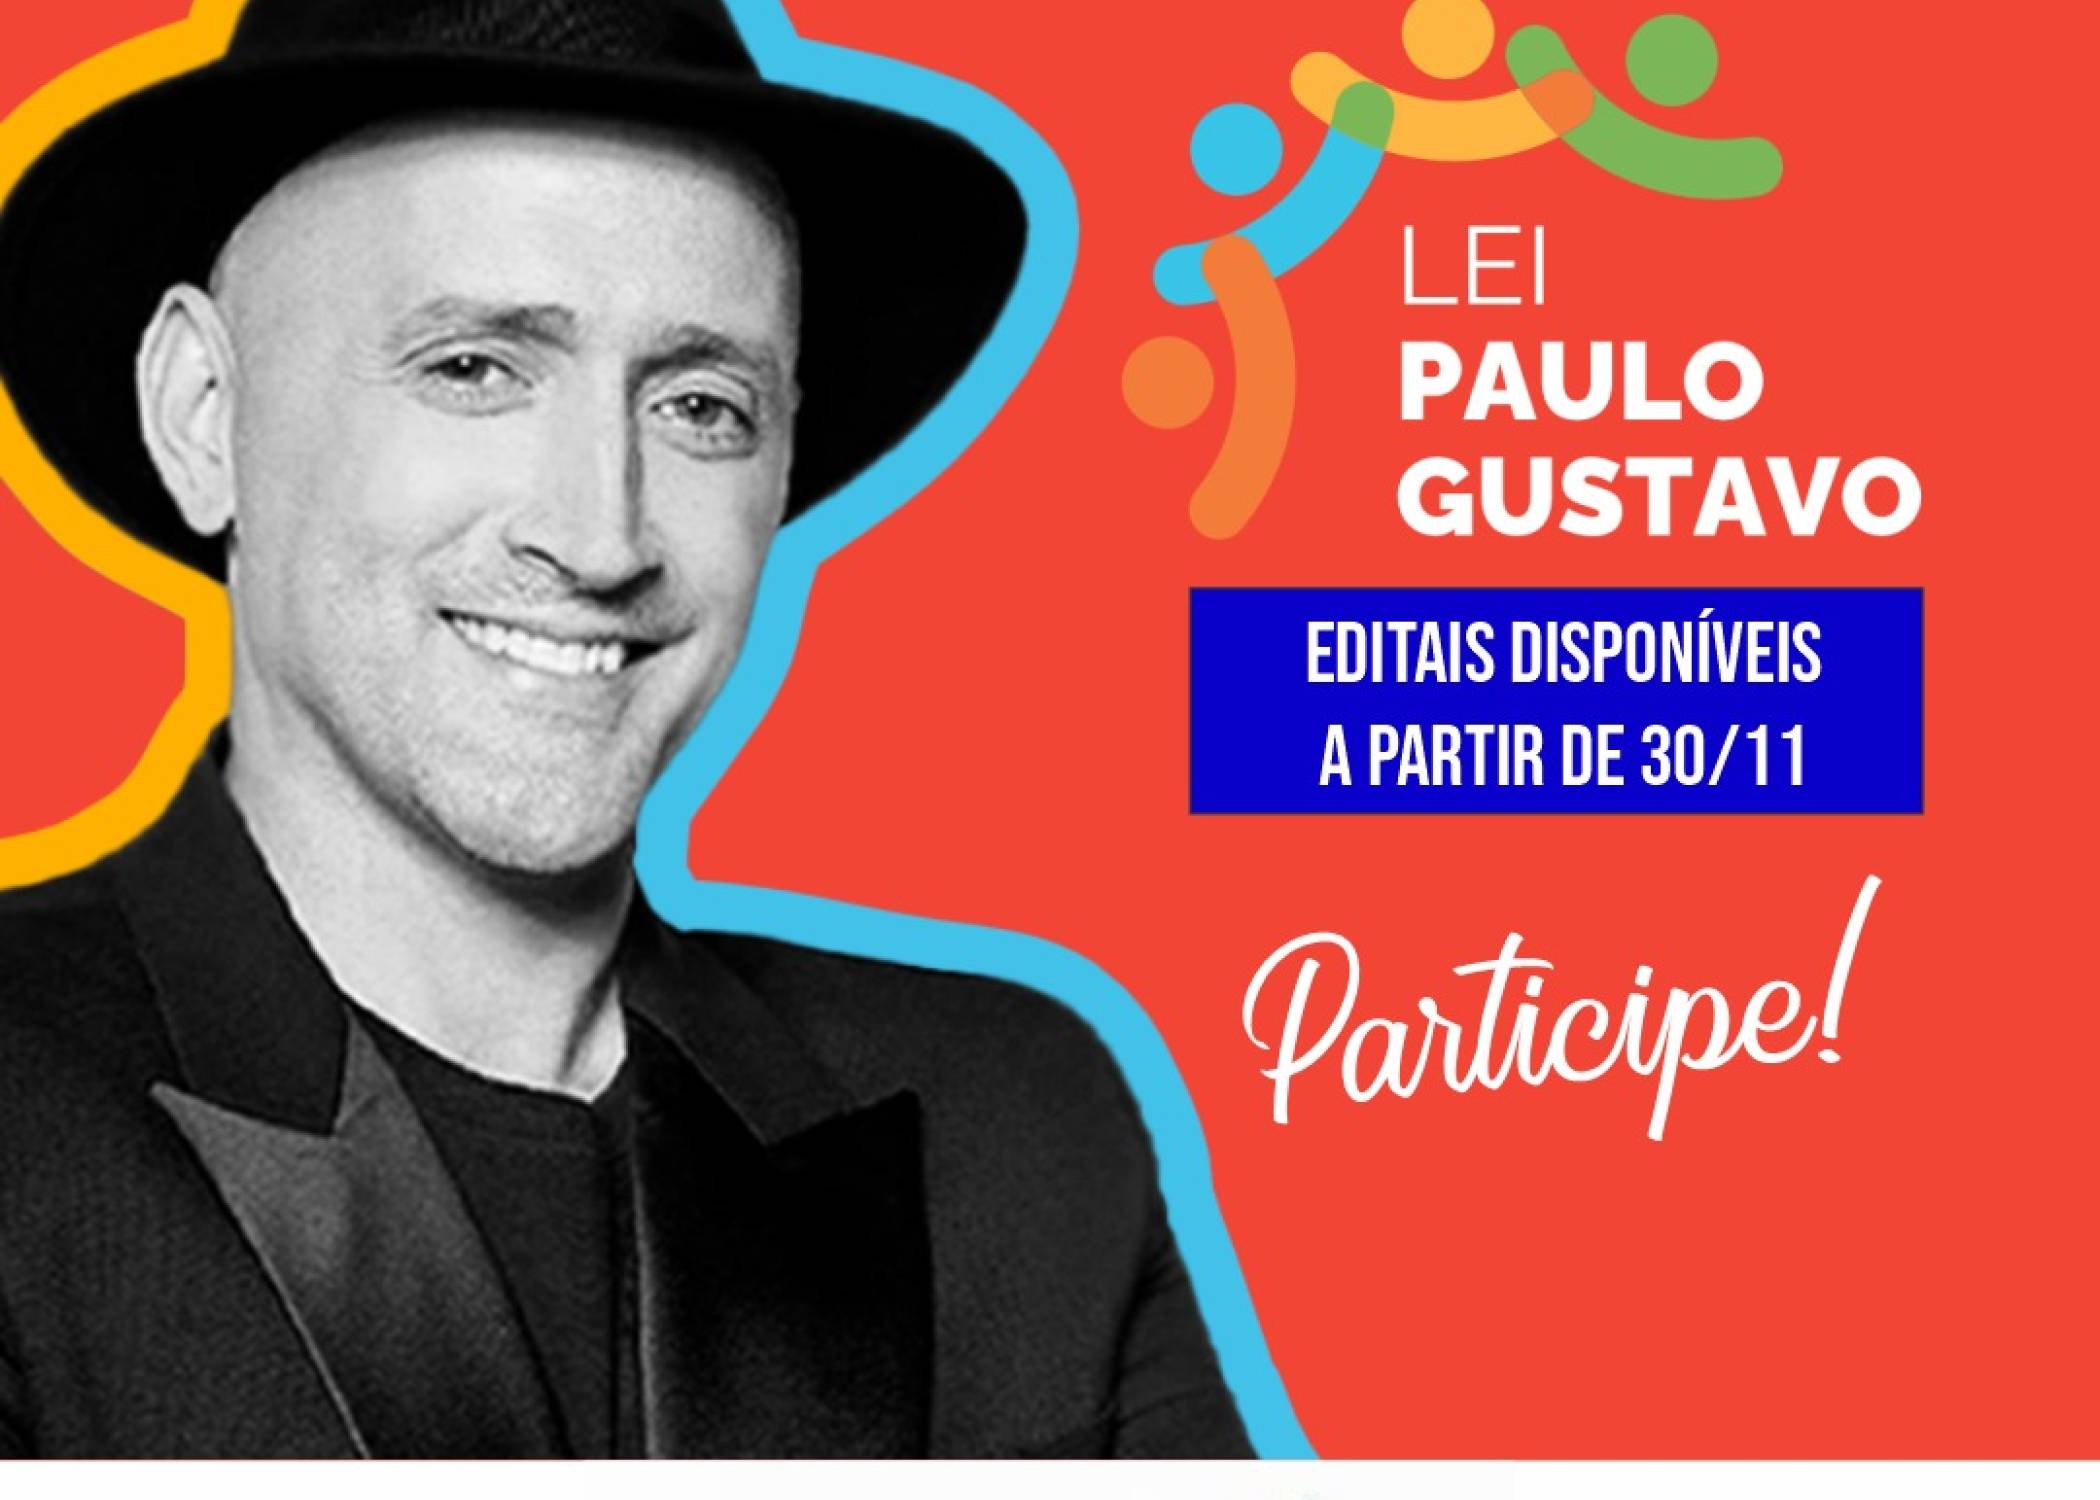 LEI PAULO GUSTAVO , EDITAIS DISPONIVEIS 